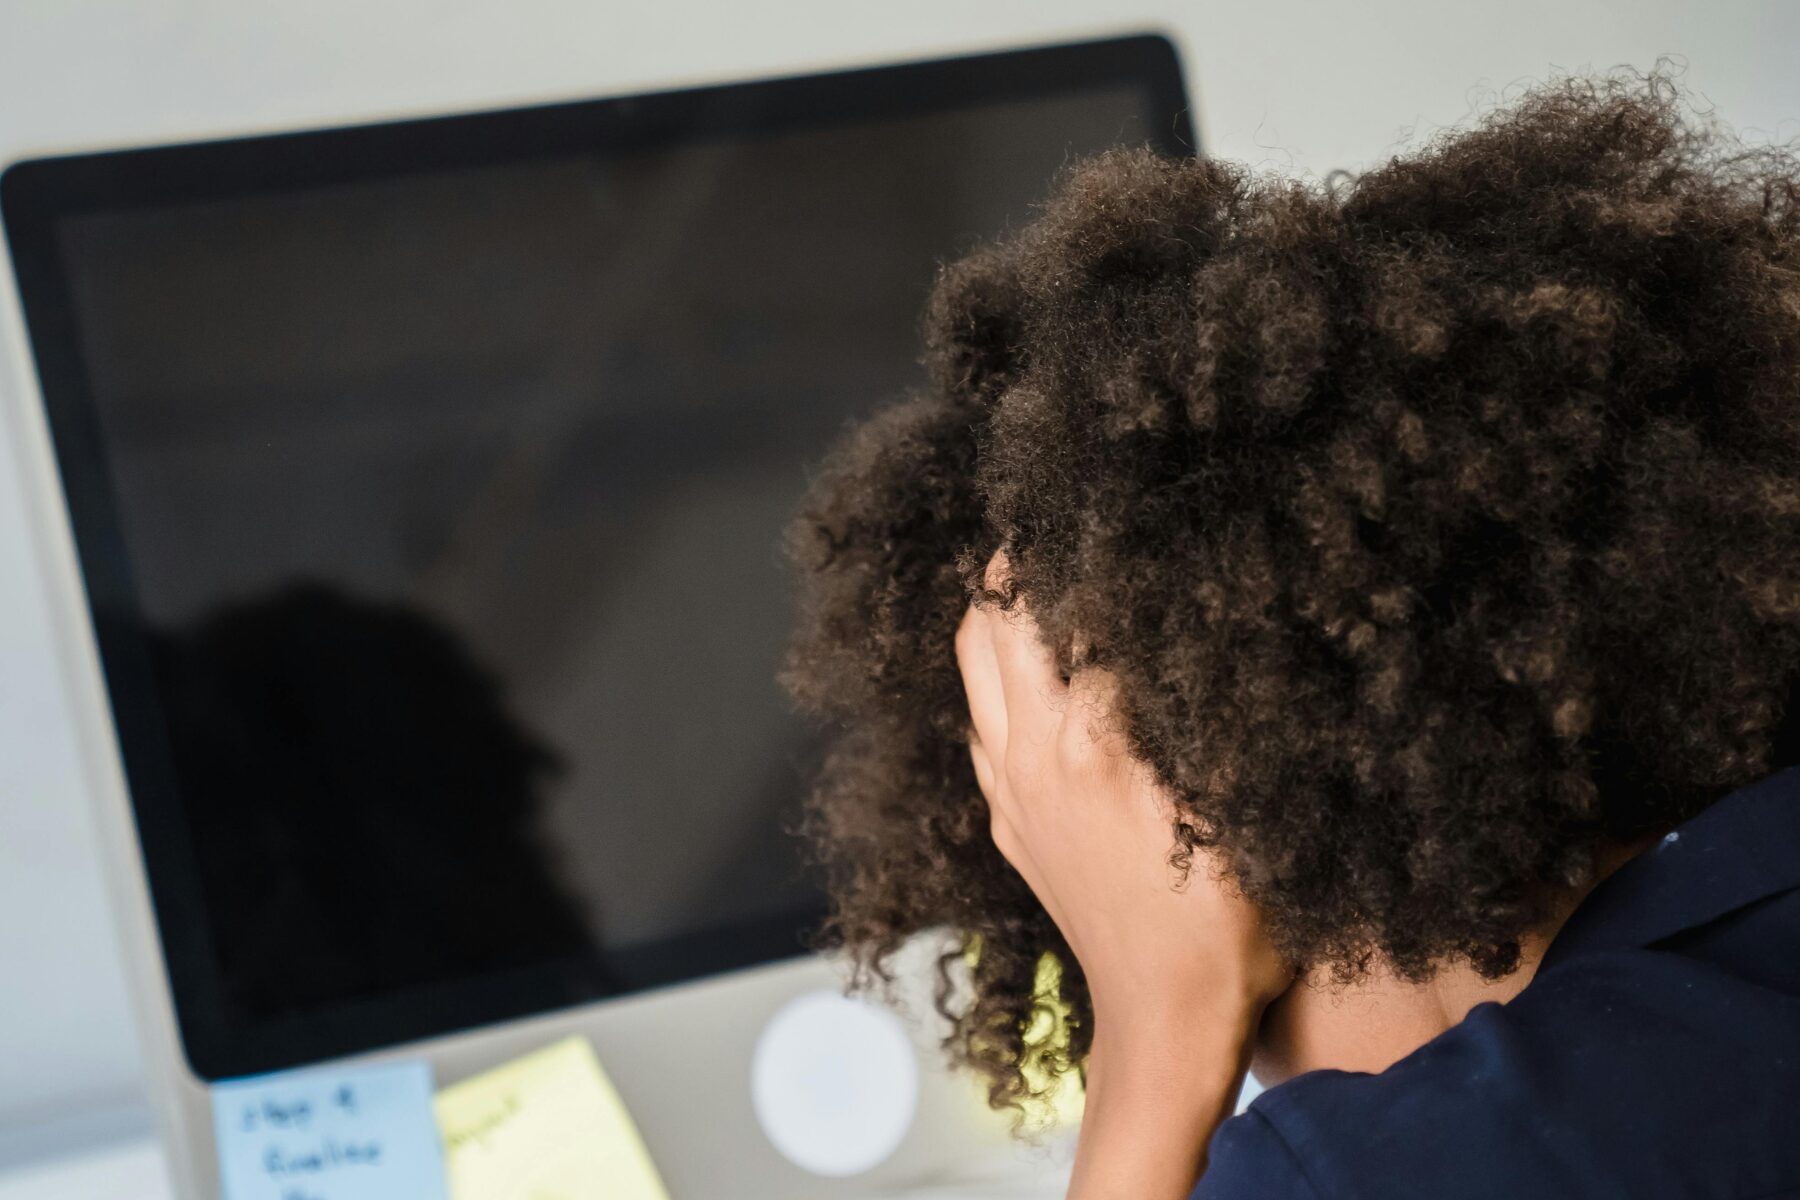 Violences sexuelles au travail. Une femme se prend la tête devant son ordinateur.